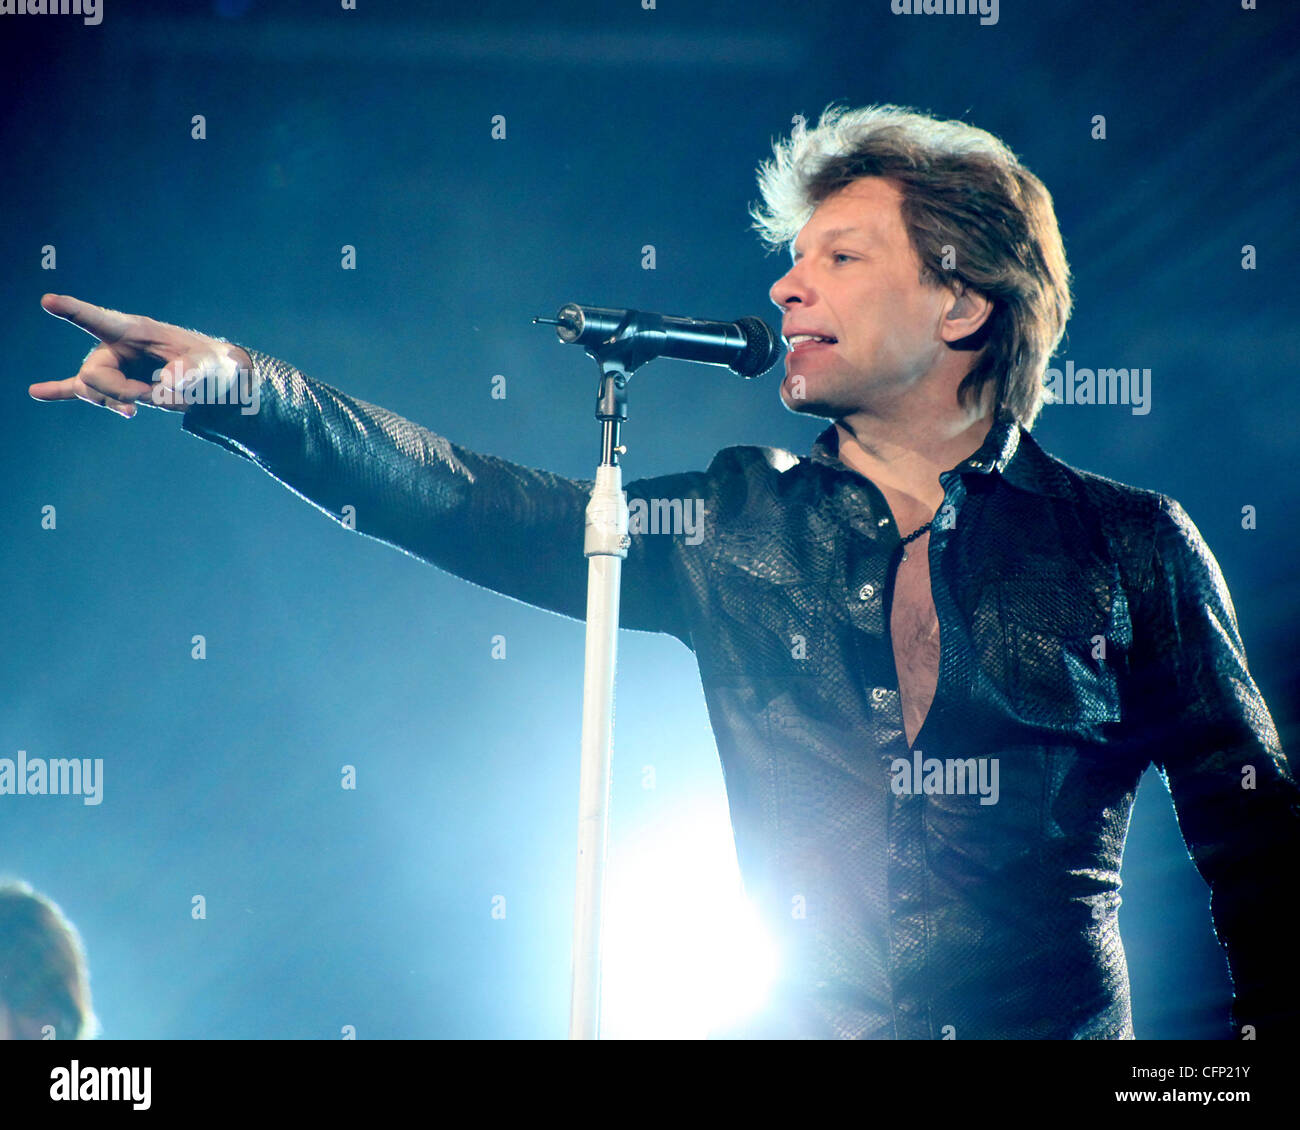 Jon Bon Jovi performing live sul palco della Air Canada Centre. Toronto, Canada - 14.02.11 Foto Stock